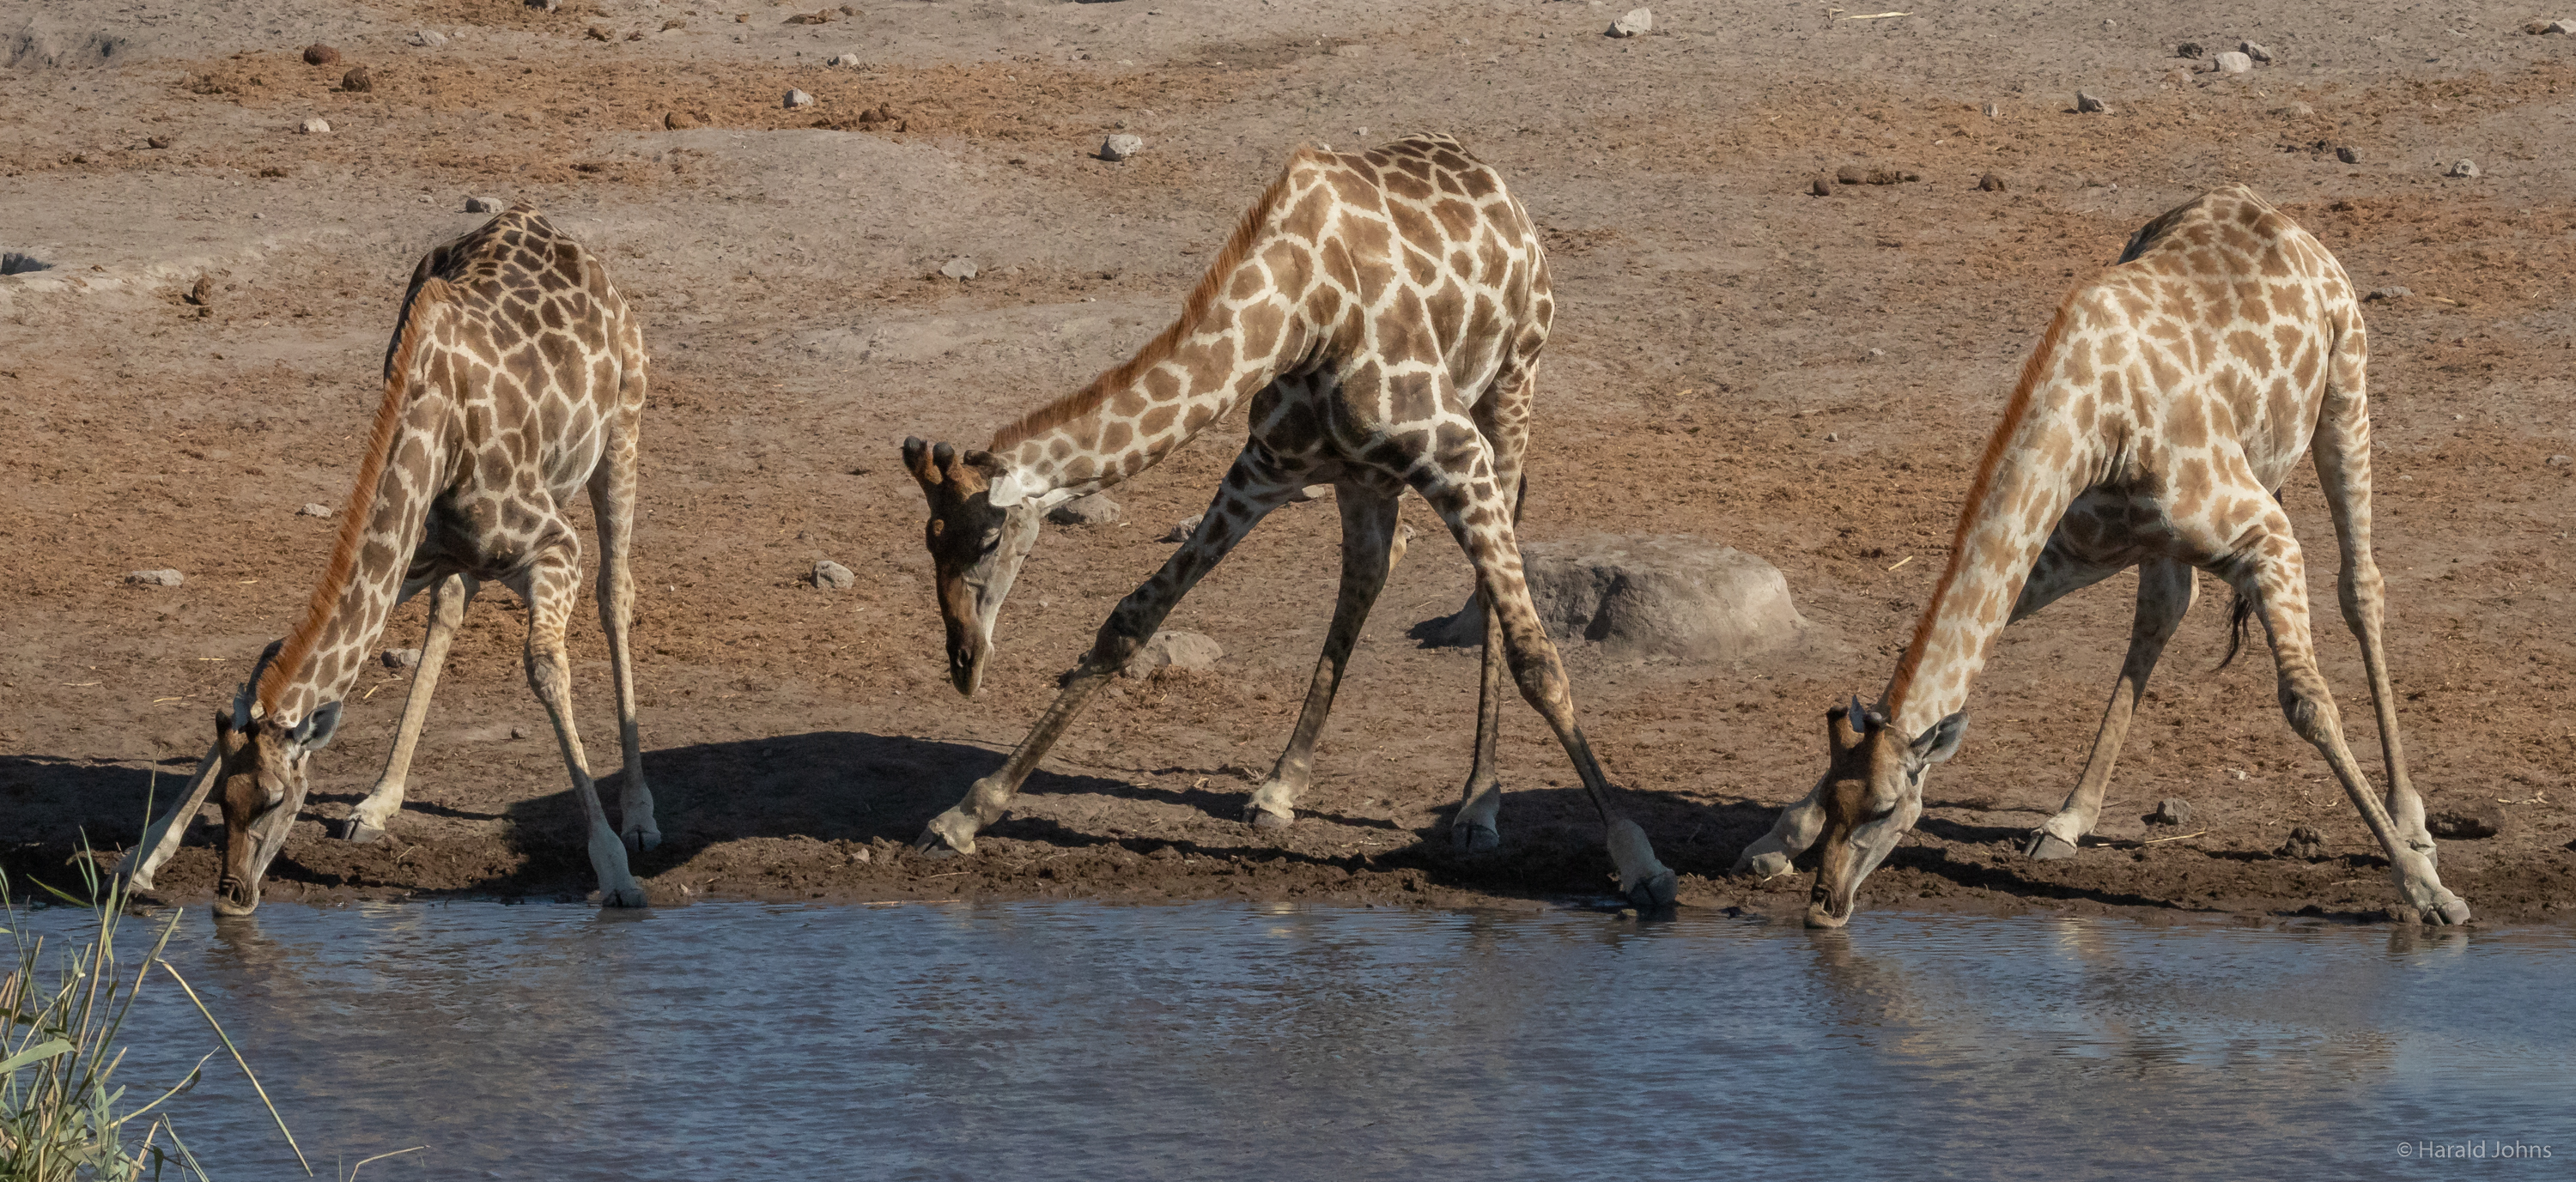 Die Giraffen müssen weit runter. Auch sie scheuen schnell, wegen Gefahren im Wasser.